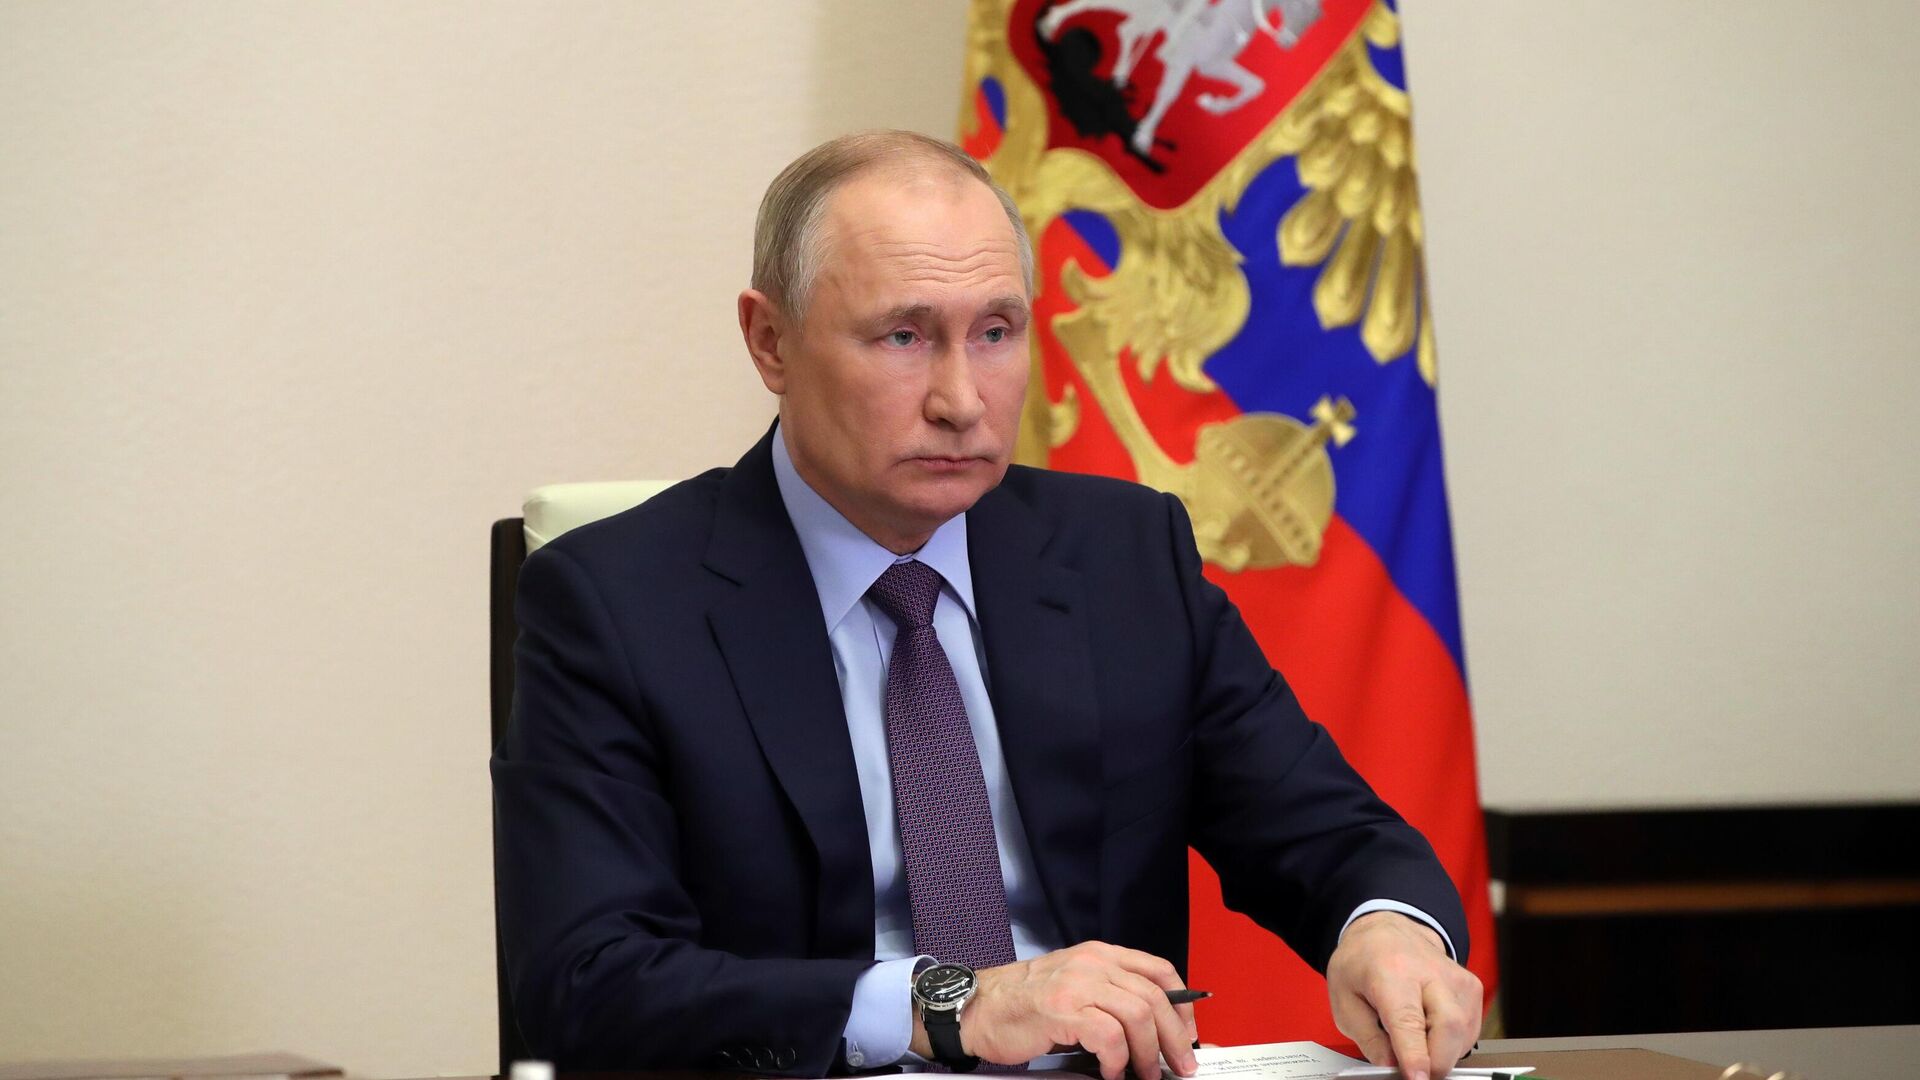 Почему Путин пыняет: рассмотрение его политических действий